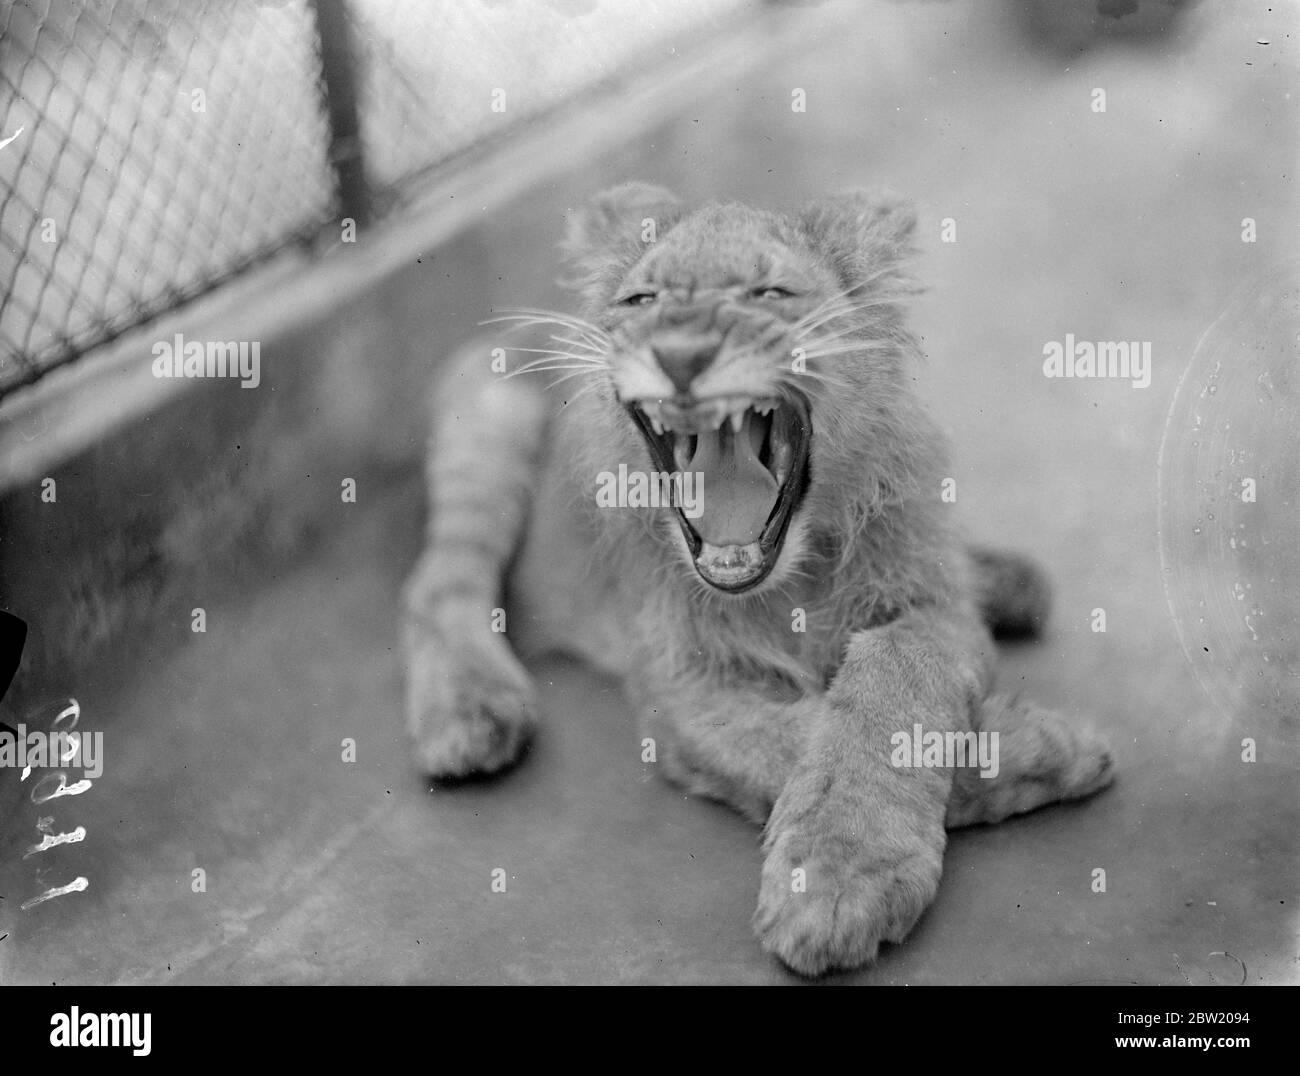 Jimmy è un playboy non è più! Il cucciolo di leone dello zoo di Londra, allevato a mano da Alan Best, assistente curatore ha perso i suoi modi divertenti ed è stato collocato in una gabbia. 26 giugno 1937 Foto Stock